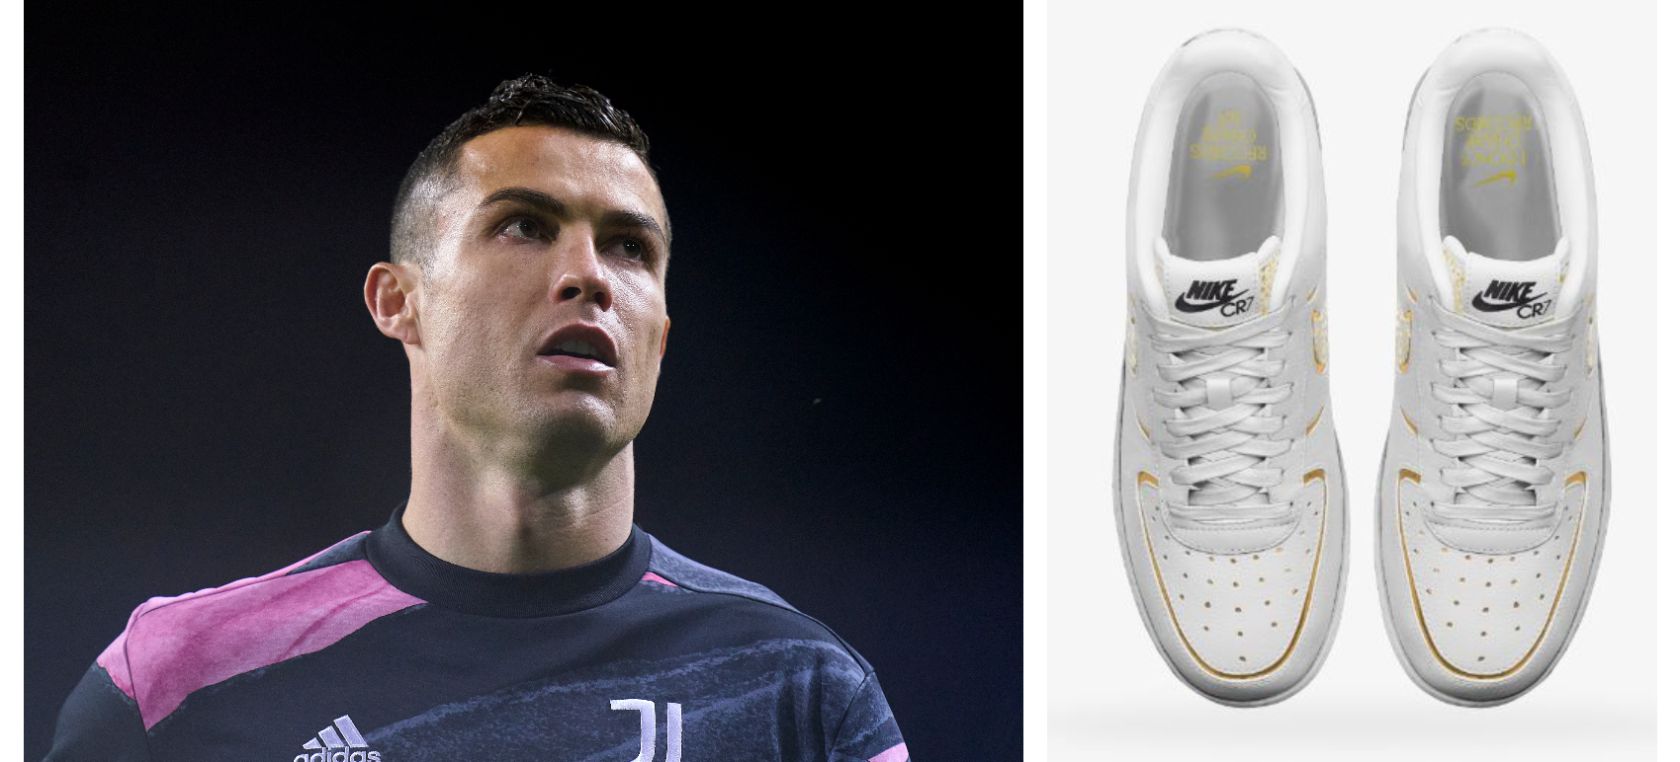 Depender de Ciudadanía Desgastar Nike lanza unas zapatillas diseñadas por Cristiano Ronaldo | Moda | LOS40